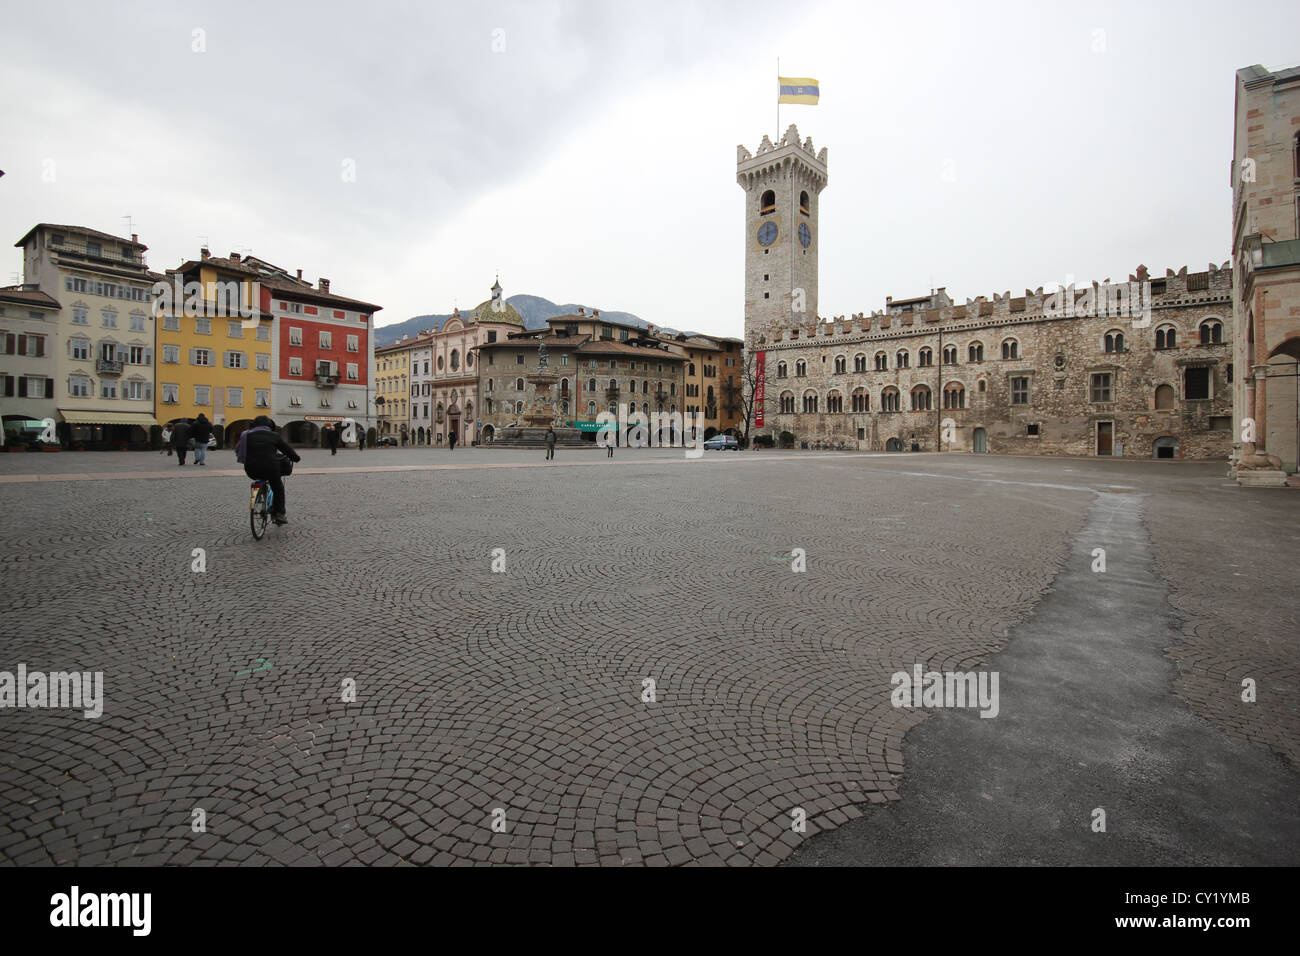 Trento, la piazza della cattedrale di San Vigilio, Trentino, Italia, viaggi architettura, monumento storico, photoarkive Foto Stock